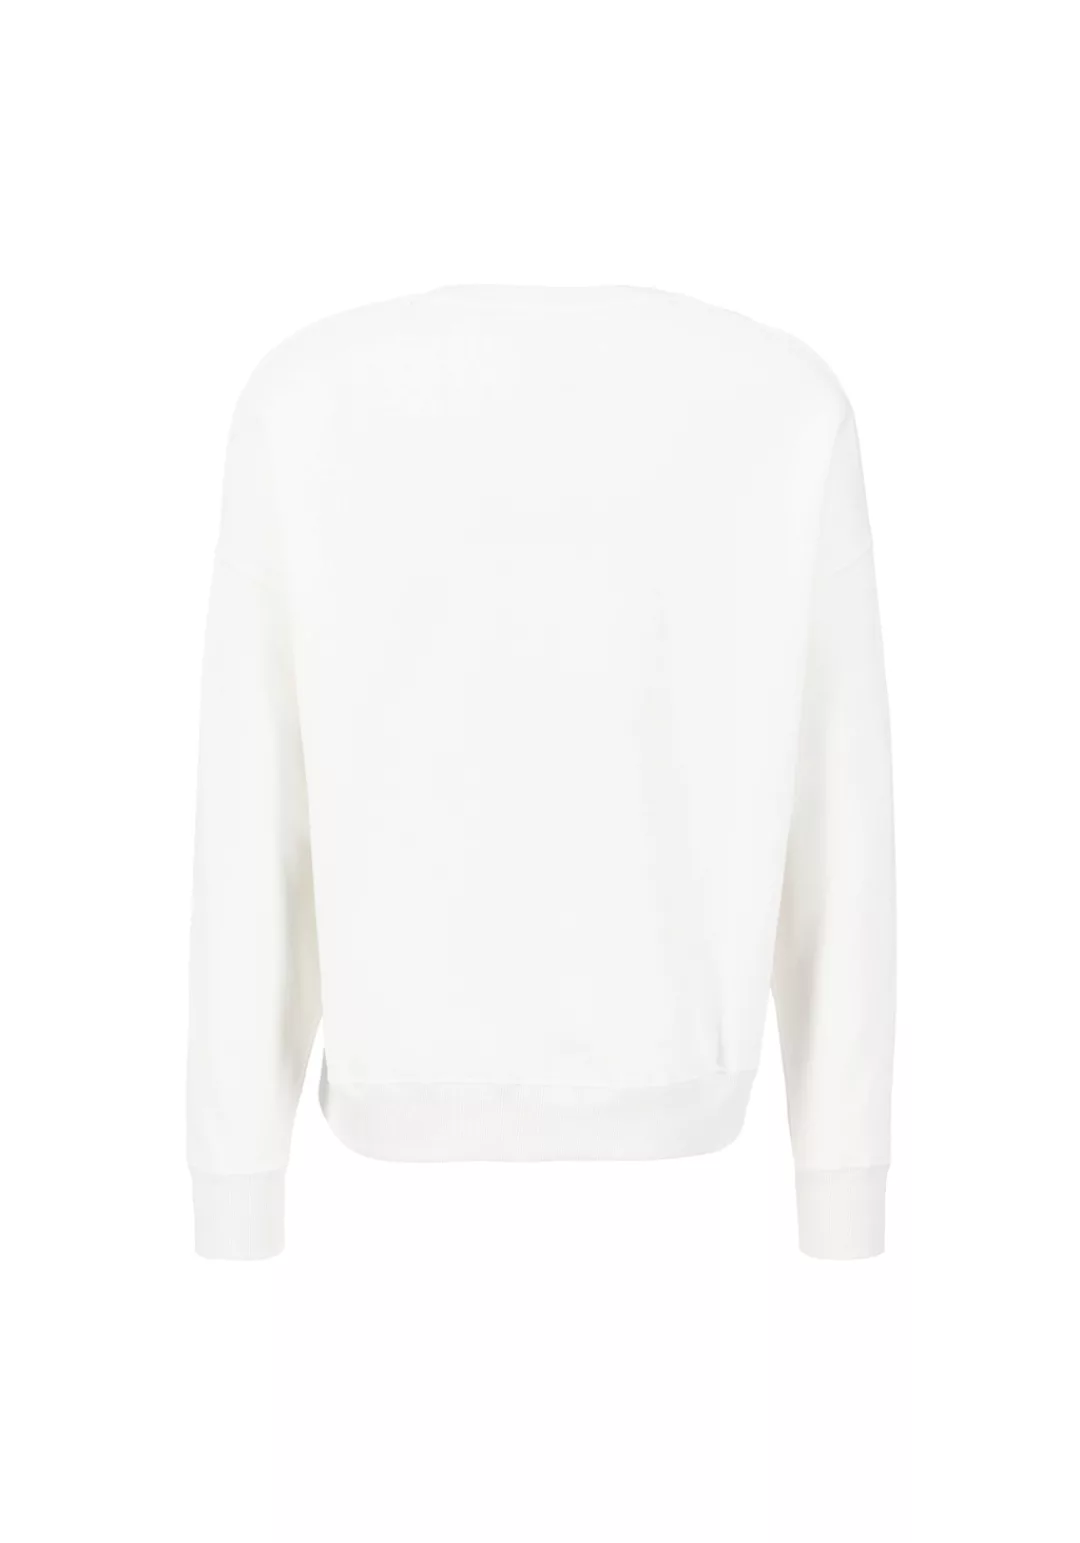 Alpha Industries Sweater ALPHA INDUSTRIES Men - Sweatshirts Basic OS Sweate günstig online kaufen